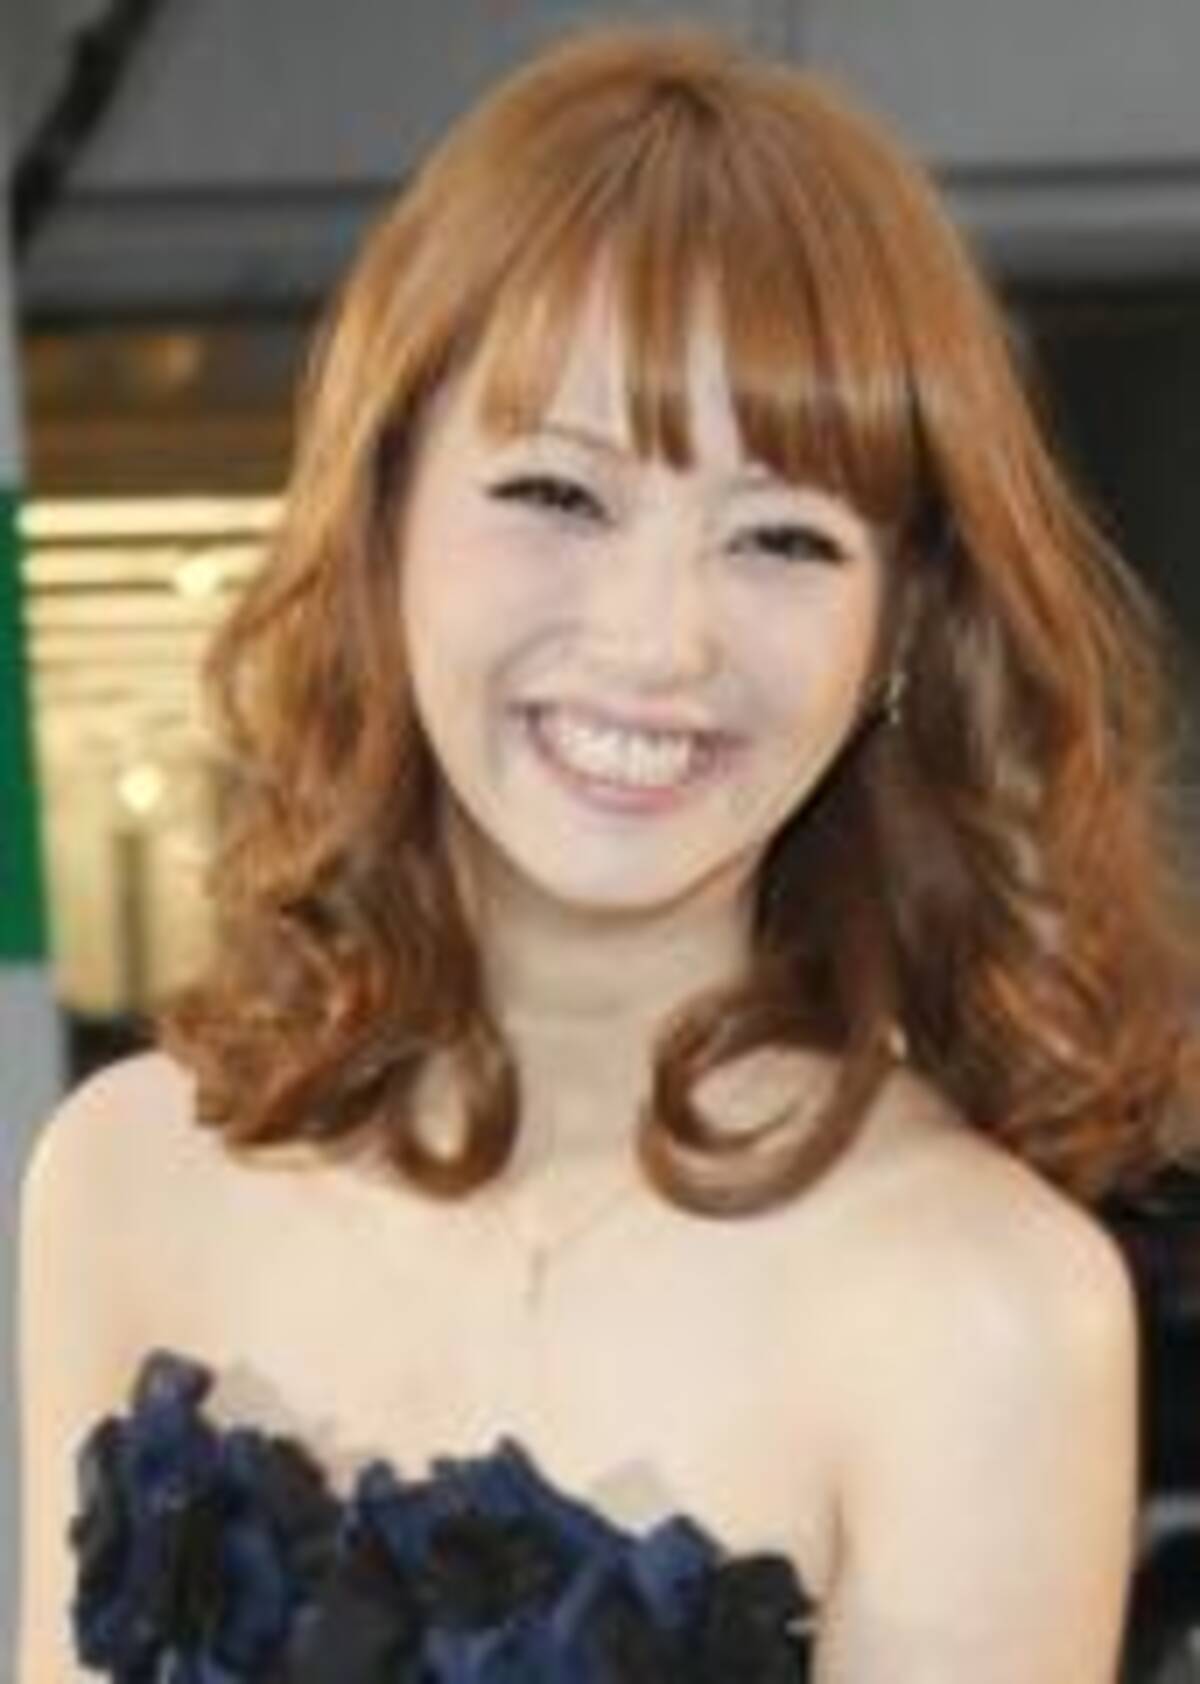 佐々木希に性器パンチラ写真大流出 11年3月26日 エキサイトニュース